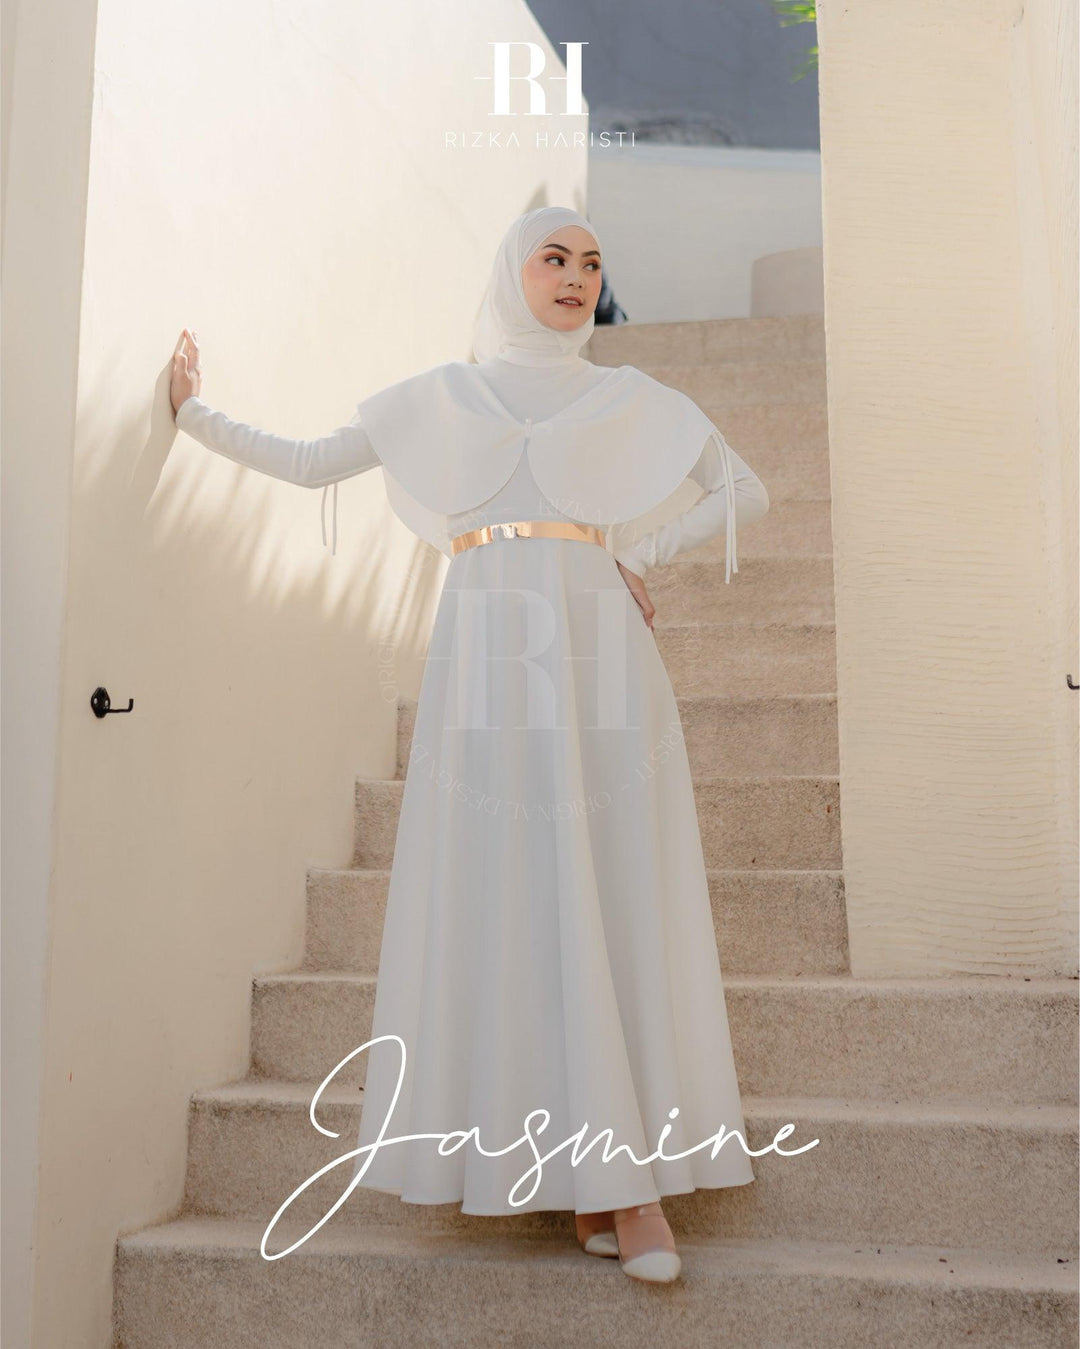 Jasmine - RH by Rizka Haristi